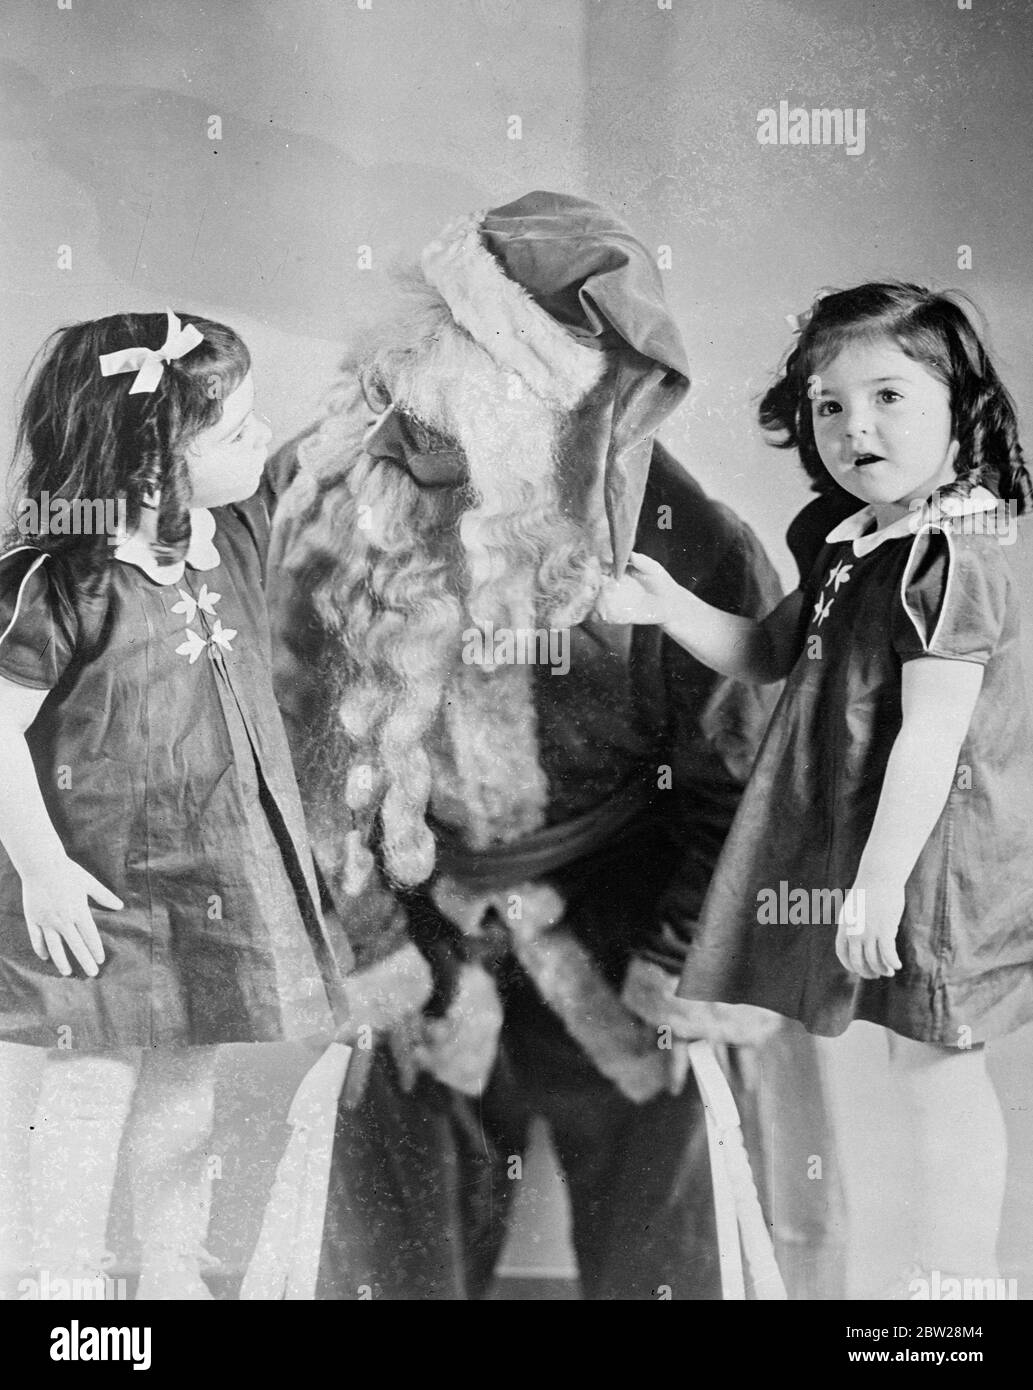 Les Quins ont passé un joyeux Noël, a découvert 'Santa' Dafoe. Bien que strictement confinées à leur pépinière Callender (Ontario), les quintuplets de Dionne ont passé un très joyeux Noël. Le moment le plus joyeux du jour, en dehors de déballer leurs nombreux cadeaux, a été la découverte du Dr Dafoe se faisant passer pour le Père Noël. Astute Yvonne et Annette ont démasqué le médecin. Des spectacles de photos, Yvonne et Annette Peer inquemment au Père Noël, qu'ils commencent à soupçonner est leur propre Dr Dafoe. 2 janvier 1938 Banque D'Images